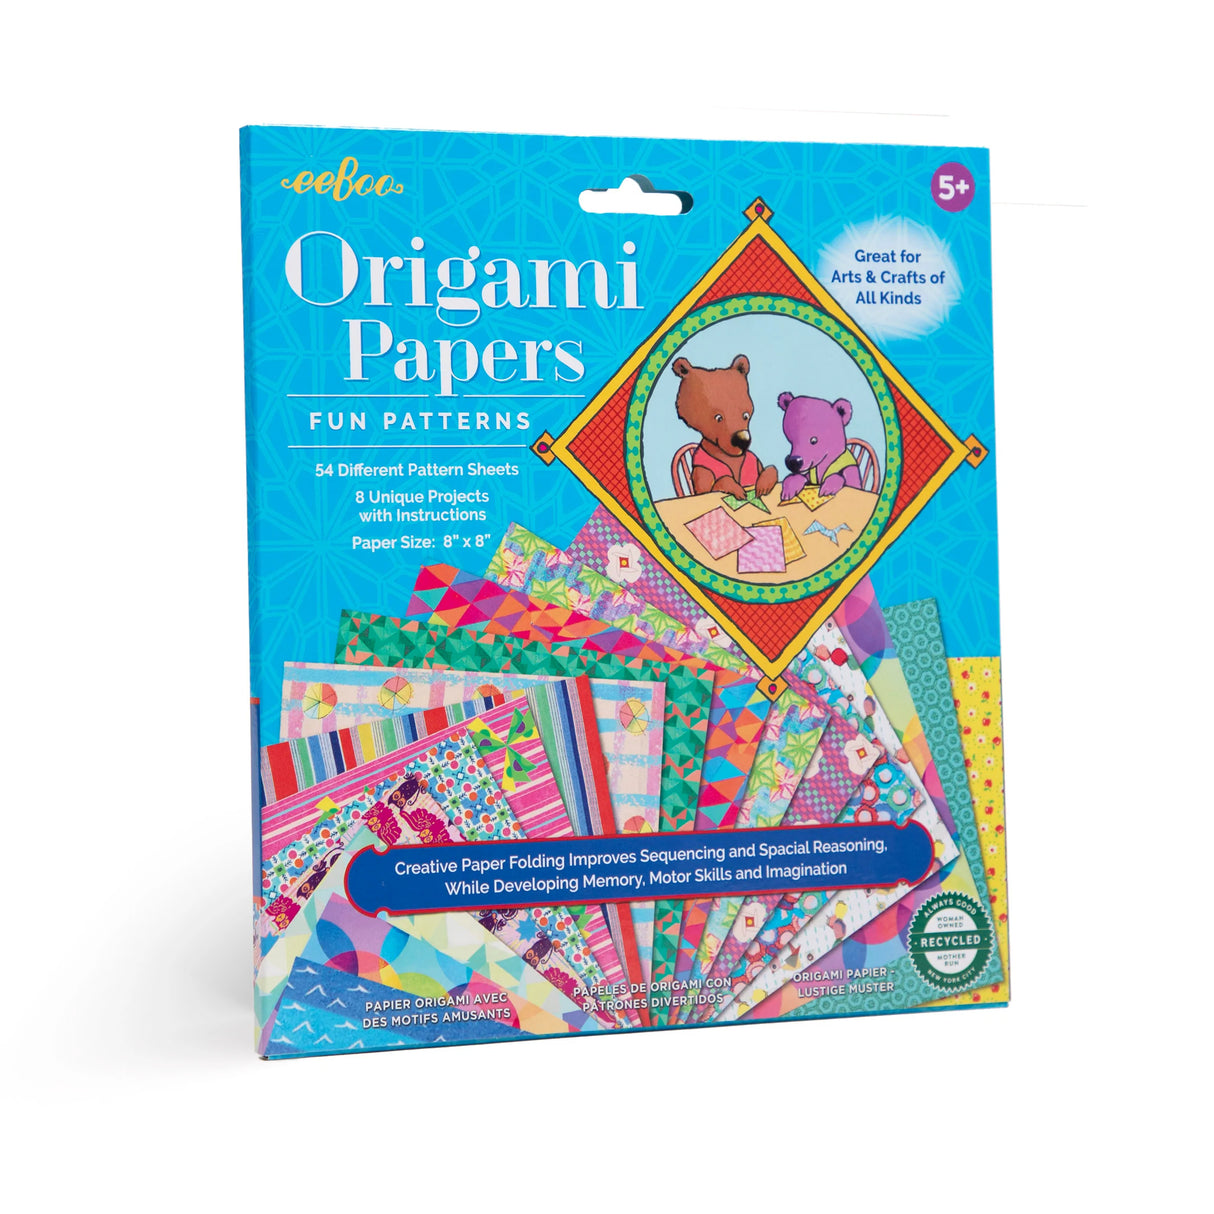 Origami Paper Fun Pattern